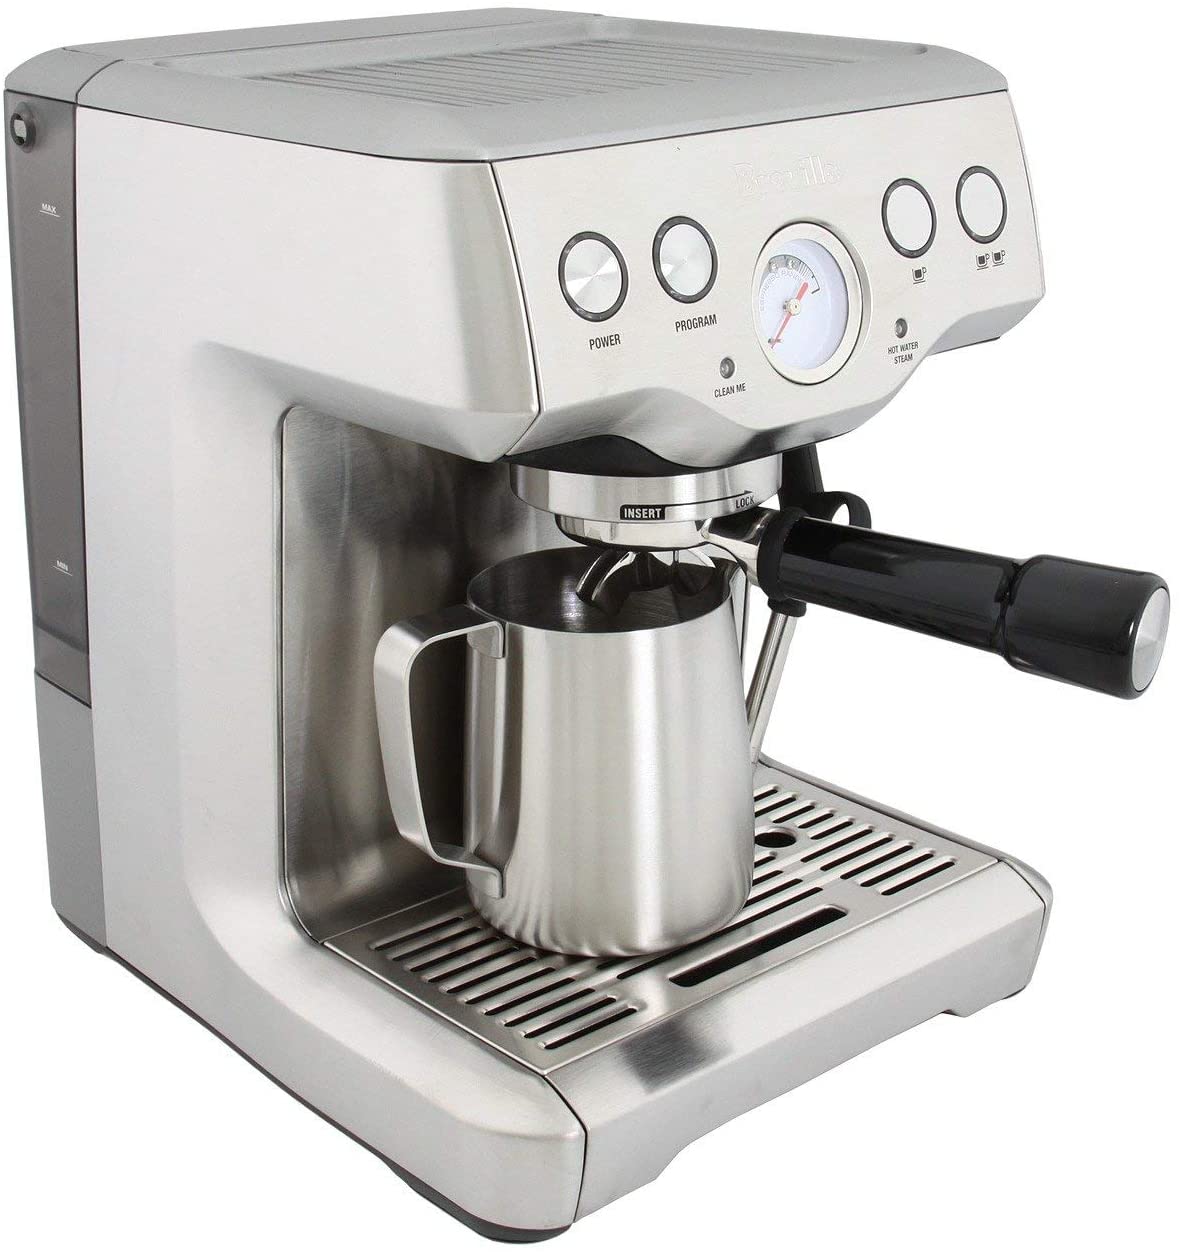 How Much Is An Espresso Machine